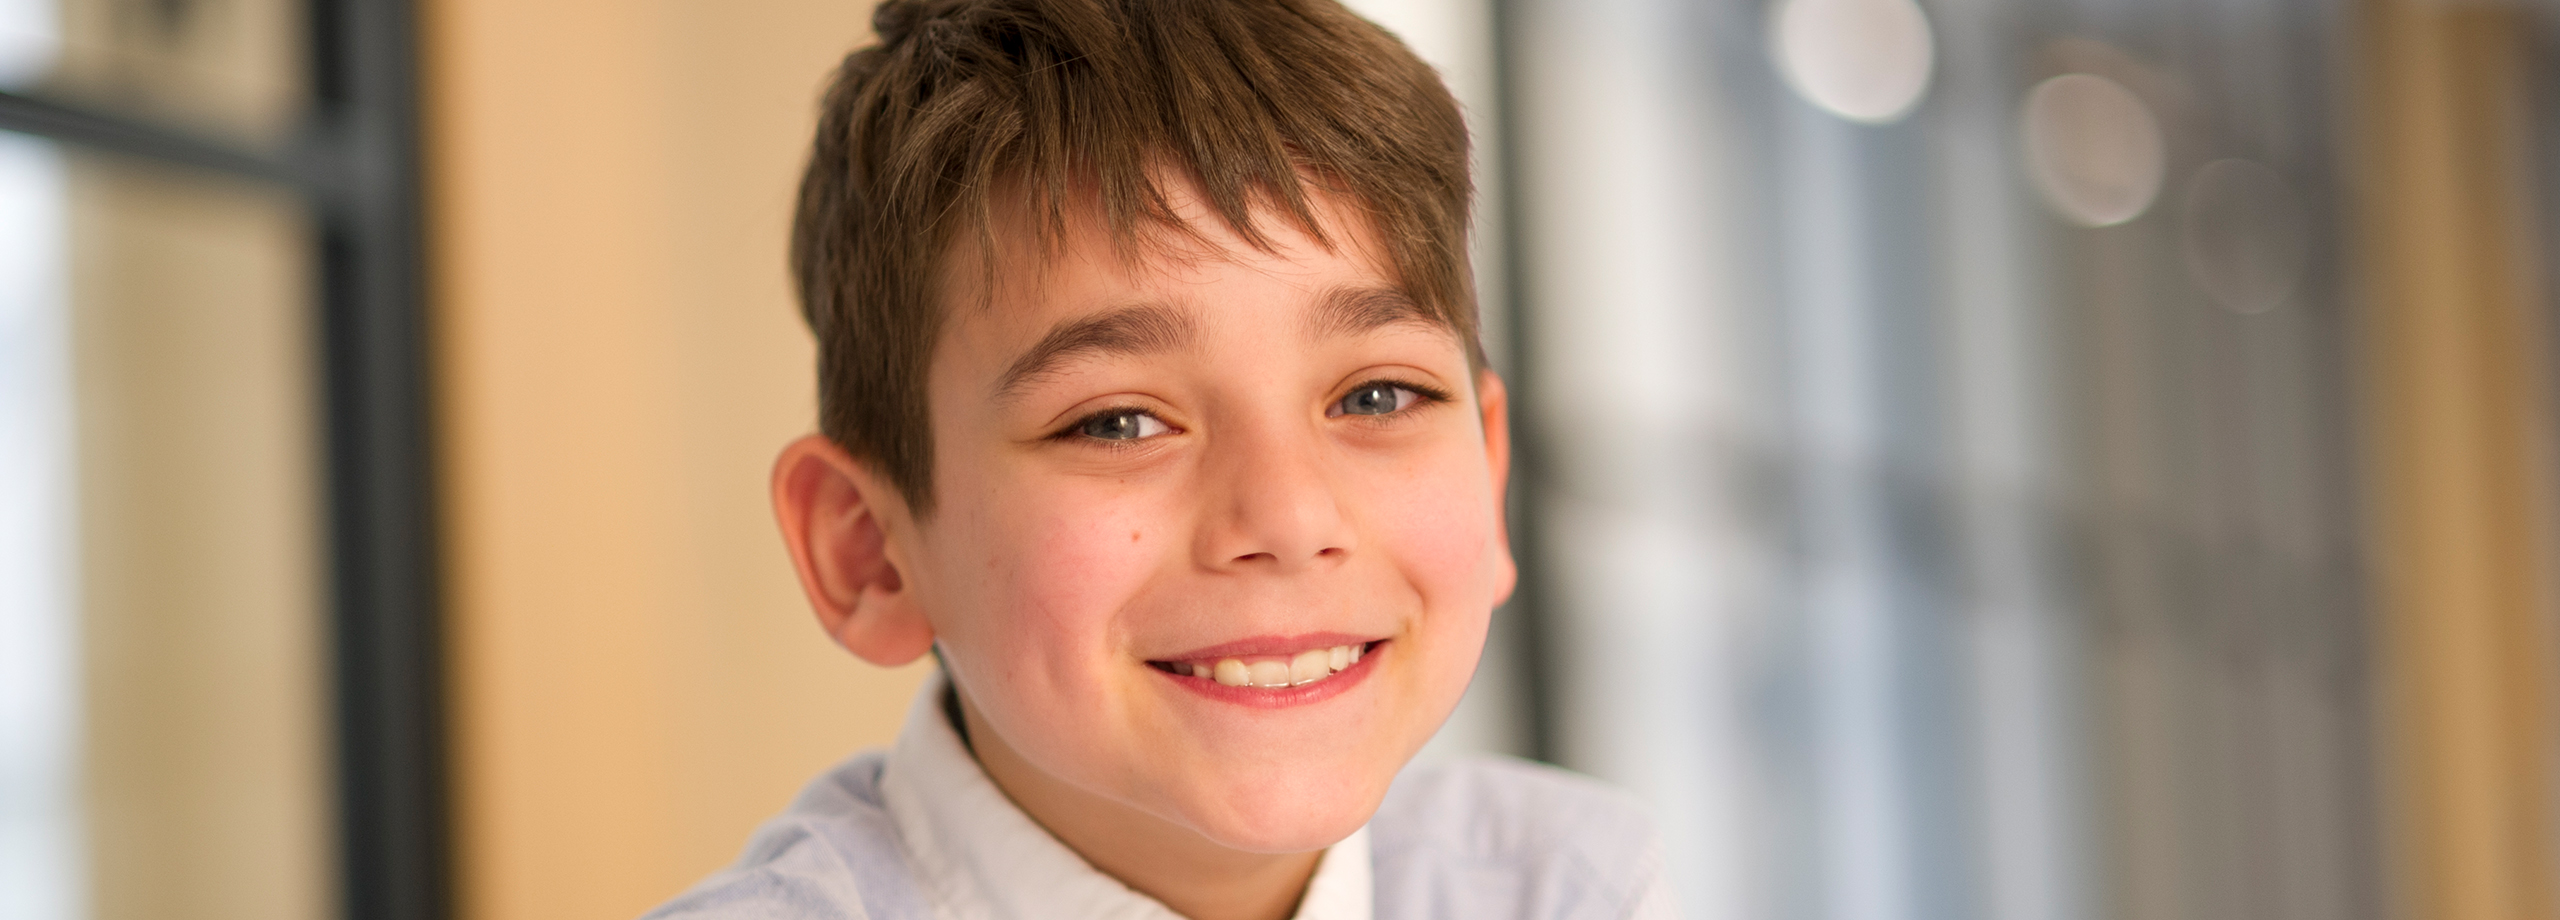 Lächelnder kleiner Junge mit CMD | Patient bei Brand Orthodontics Mainz